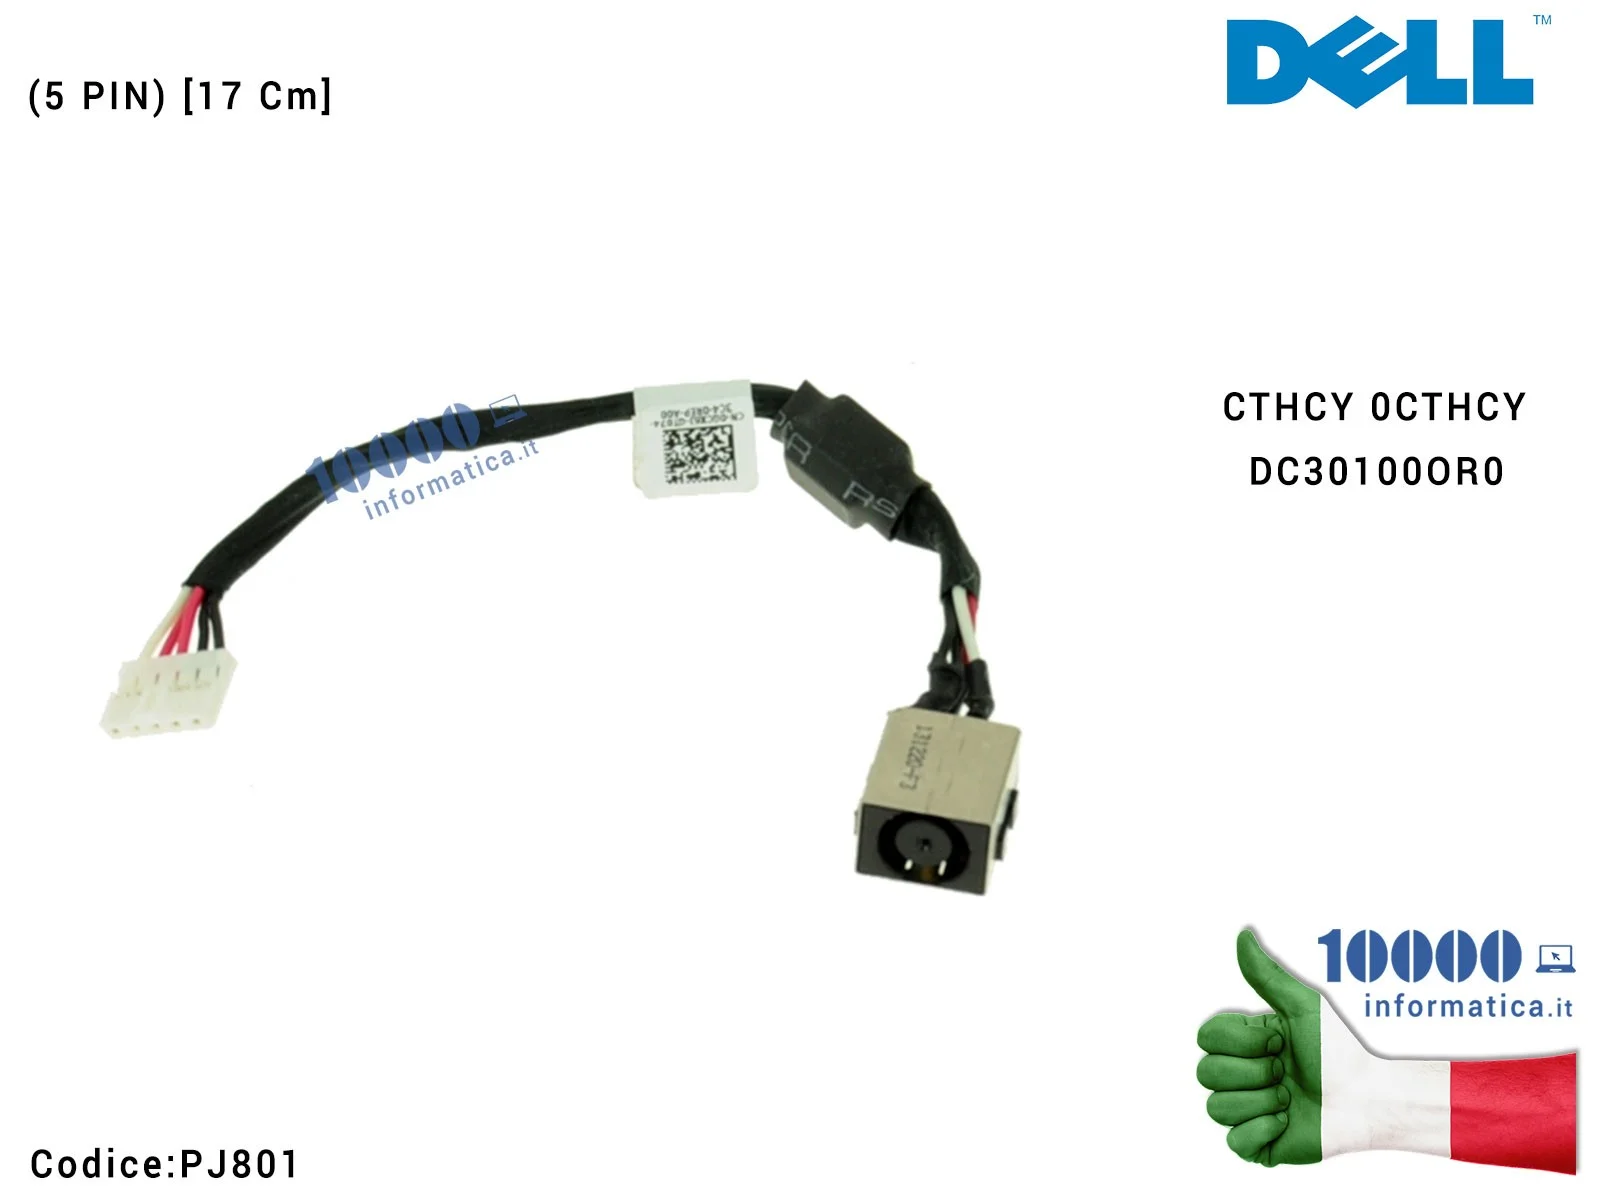 PJ801 Connettore di Alimentazione DC Power Jack PJ801 DELL Latitude E5540 (5 PIN) [17 Cm] CTHCY 0CTHCY DC30100OR0